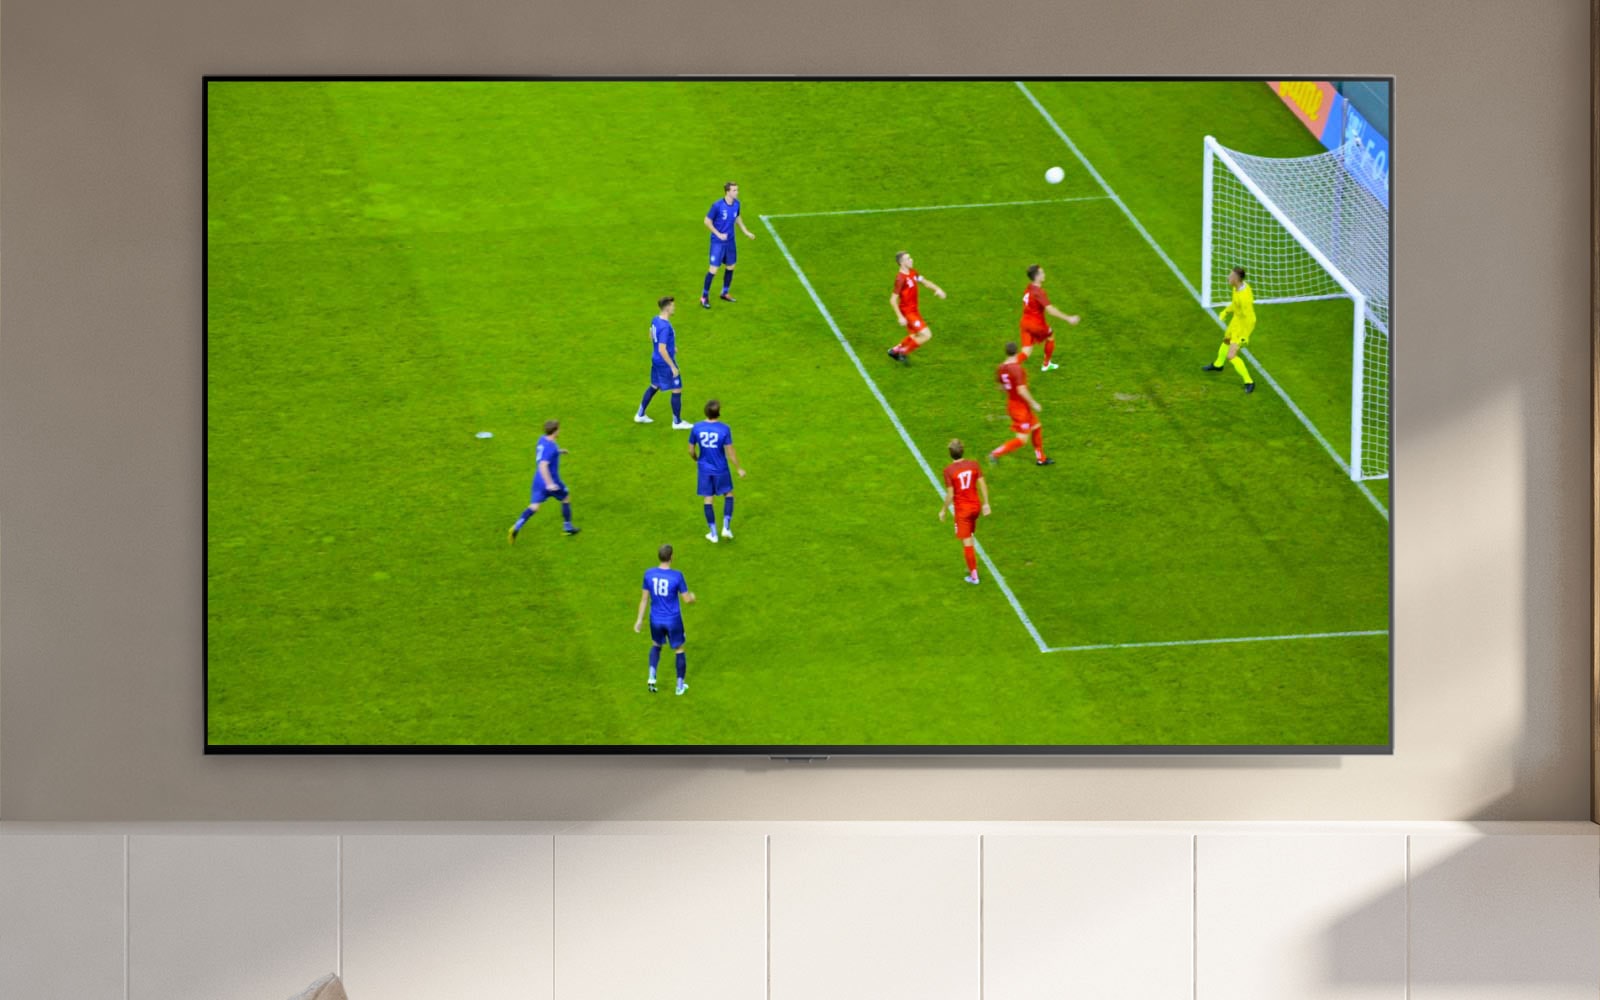 شاشة تلفزيون يظهر عليها مشهد ملغب وأحد لاعبي كرة القدم خلال تسجيل ركلة جزاء (تشغيل الفيديو)